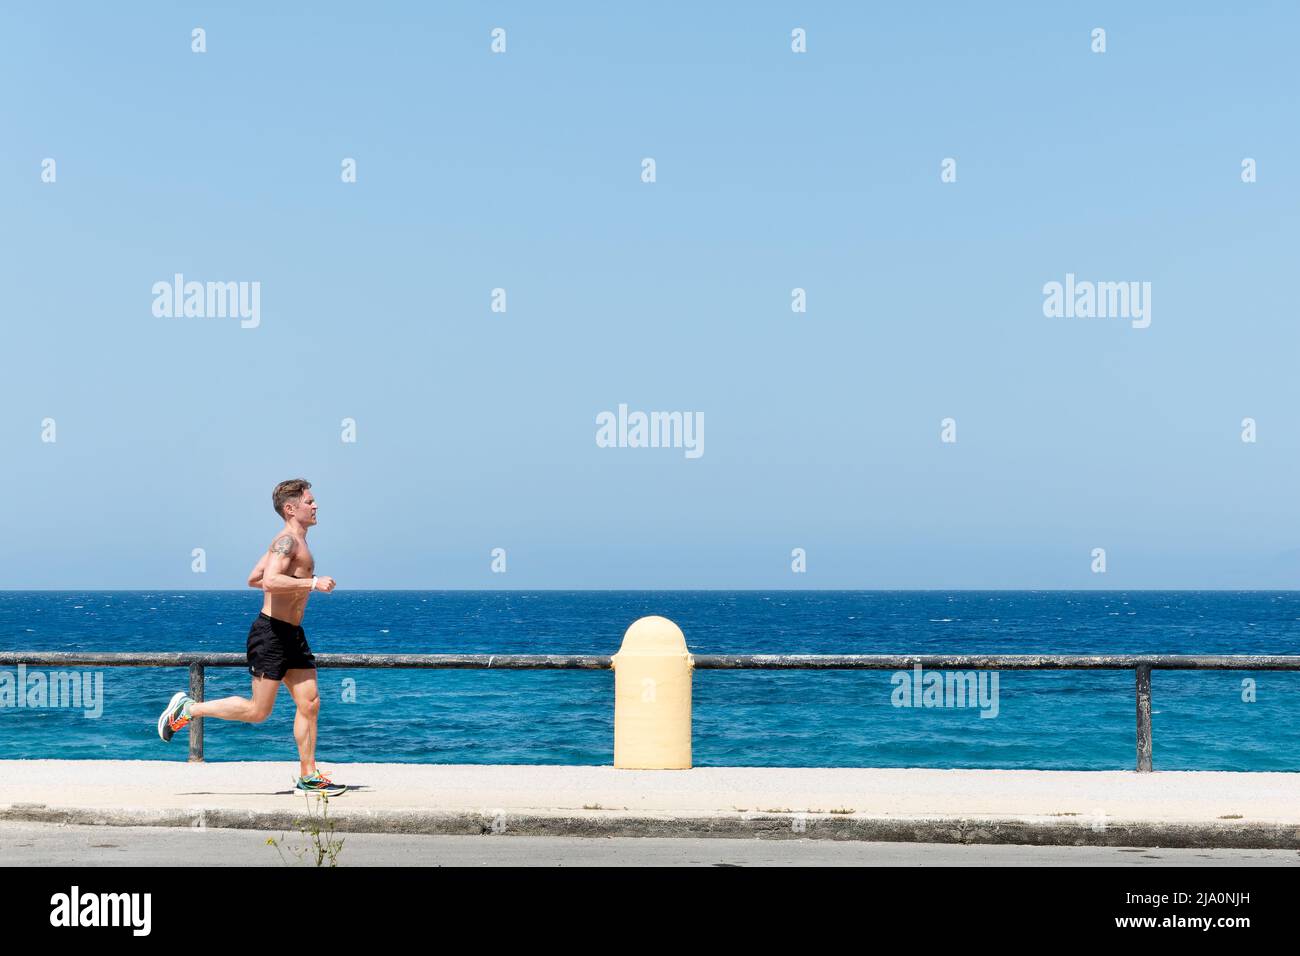 Ein Jogger oder Läufer, der hart an einer Straße am Meer trainiert und bei heißem Sonnenschein bis zur Taille entkleidet ist. Im Hintergrund ist ein türkisfarbenes Meer zu sehen Stockfoto